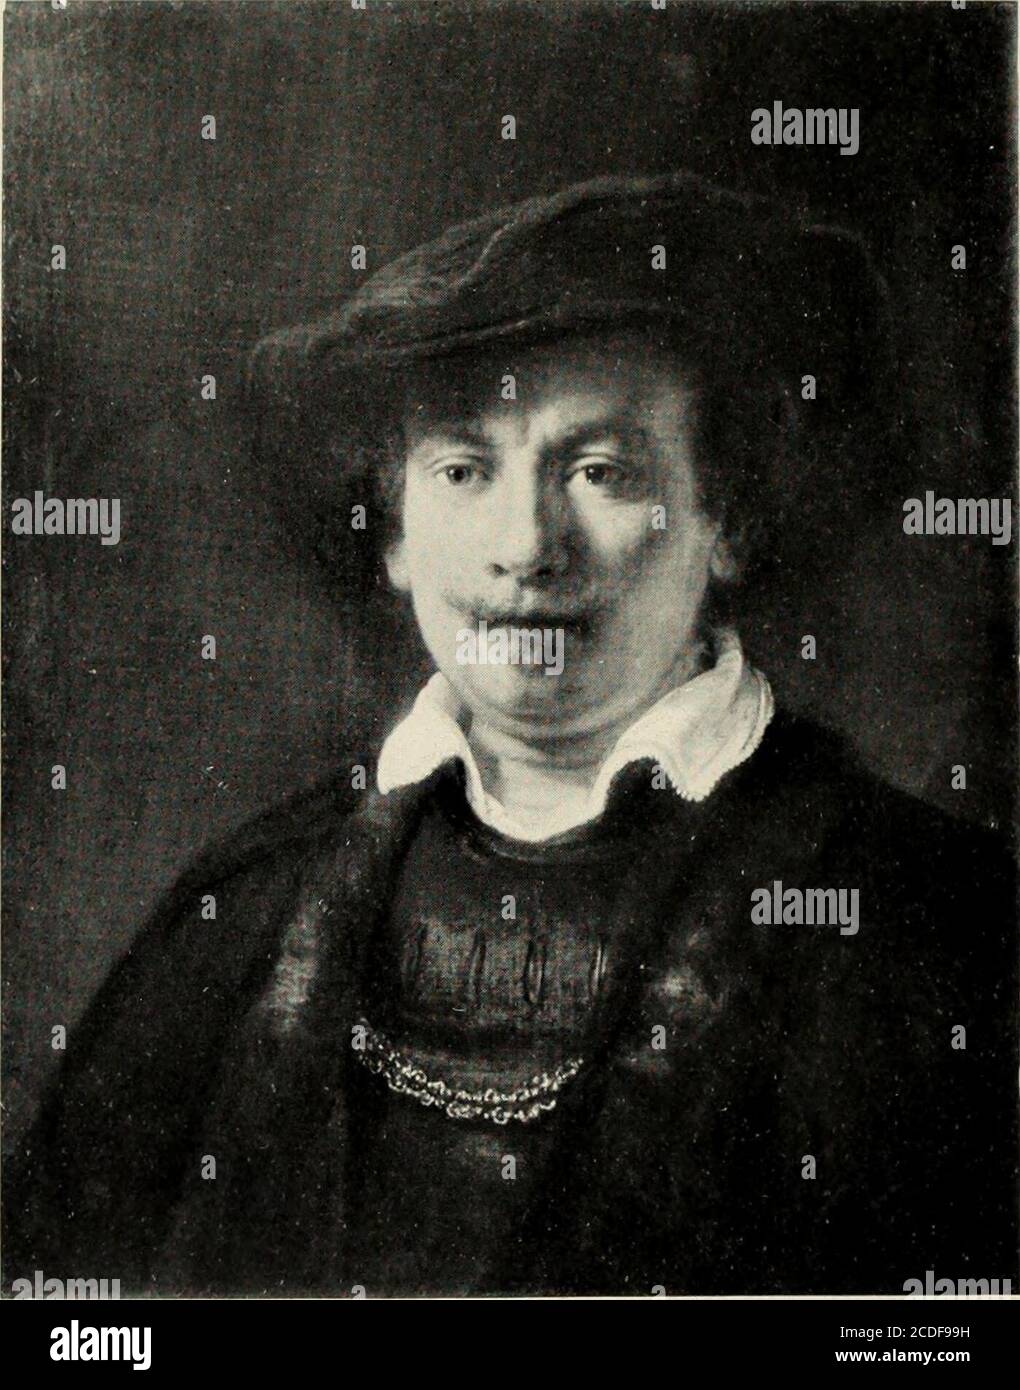 . Rembrandt; des meisters gemälde in 643 abbildungen . Amsterdam, Reichsmuseum (van Weede van Dijkveld) Auf Holz, H. 1,06, B.0.S1 Weibliches Bildnis (Saskia?)Portrait of a lady 1639 Portrait dune dame B.274 243. f Weimar, Grossherzog von Sachsen Auf Leinwand, H.0,61, B. 0,48 Selbstbildnis Portrait of Rembrandt 1643 Portrait de lartiste B. 257 244 Stock Photo